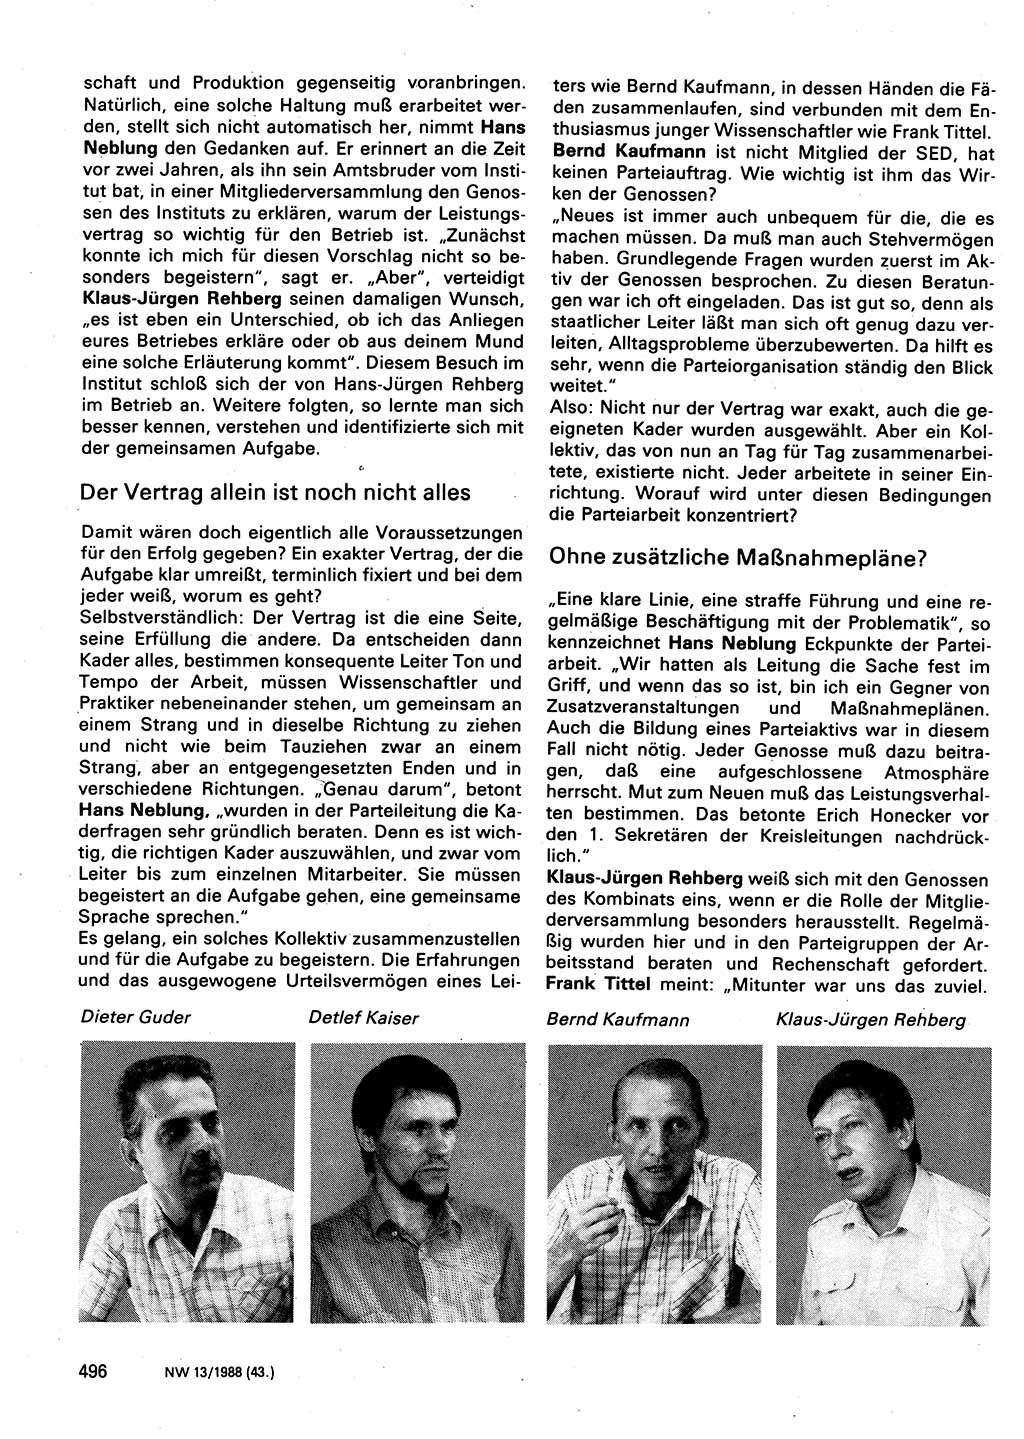 Neuer Weg (NW), Organ des Zentralkomitees (ZK) der SED (Sozialistische Einheitspartei Deutschlands) für Fragen des Parteilebens, 43. Jahrgang [Deutsche Demokratische Republik (DDR)] 1988, Seite 496 (NW ZK SED DDR 1988, S. 496)